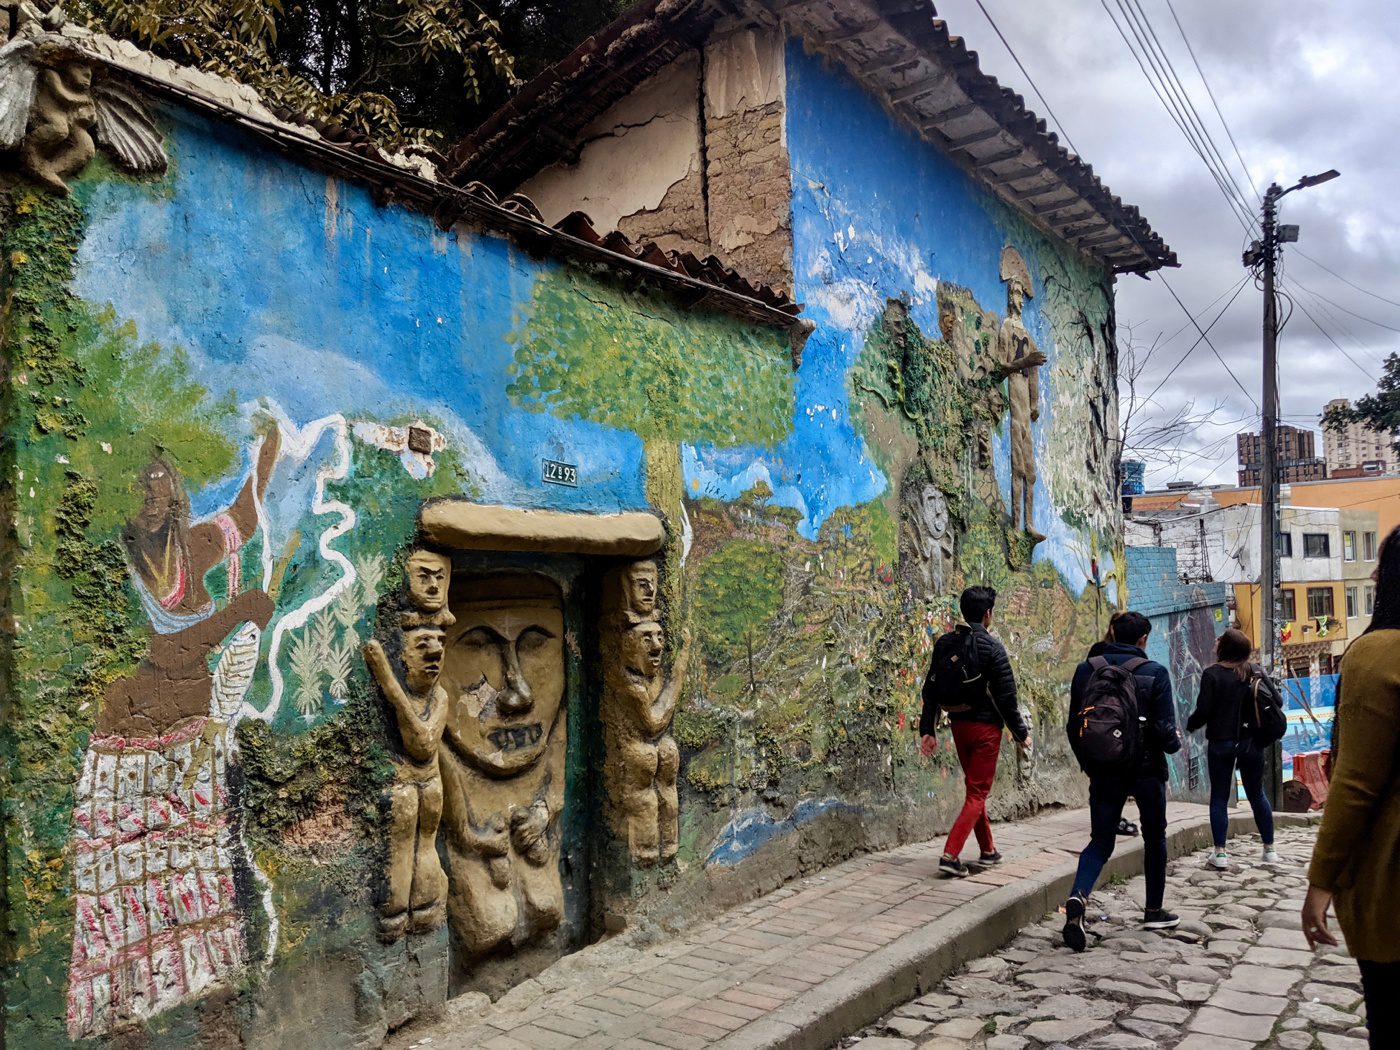 Murals in the La Candelaria, Colombia neighborhood